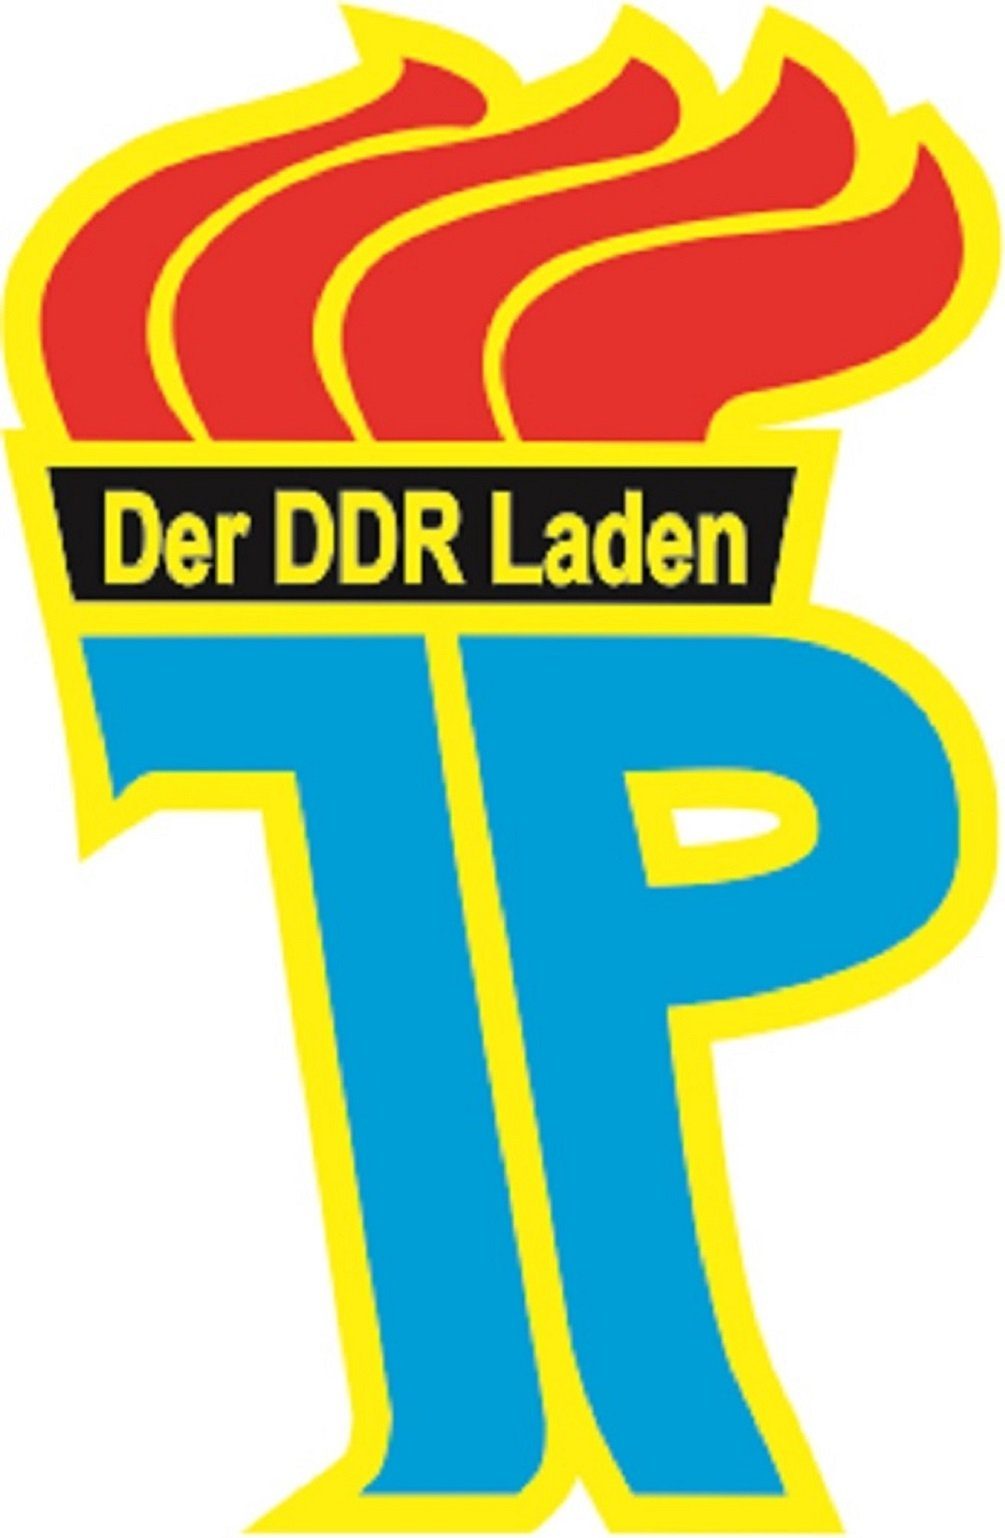 Der DDR Laden